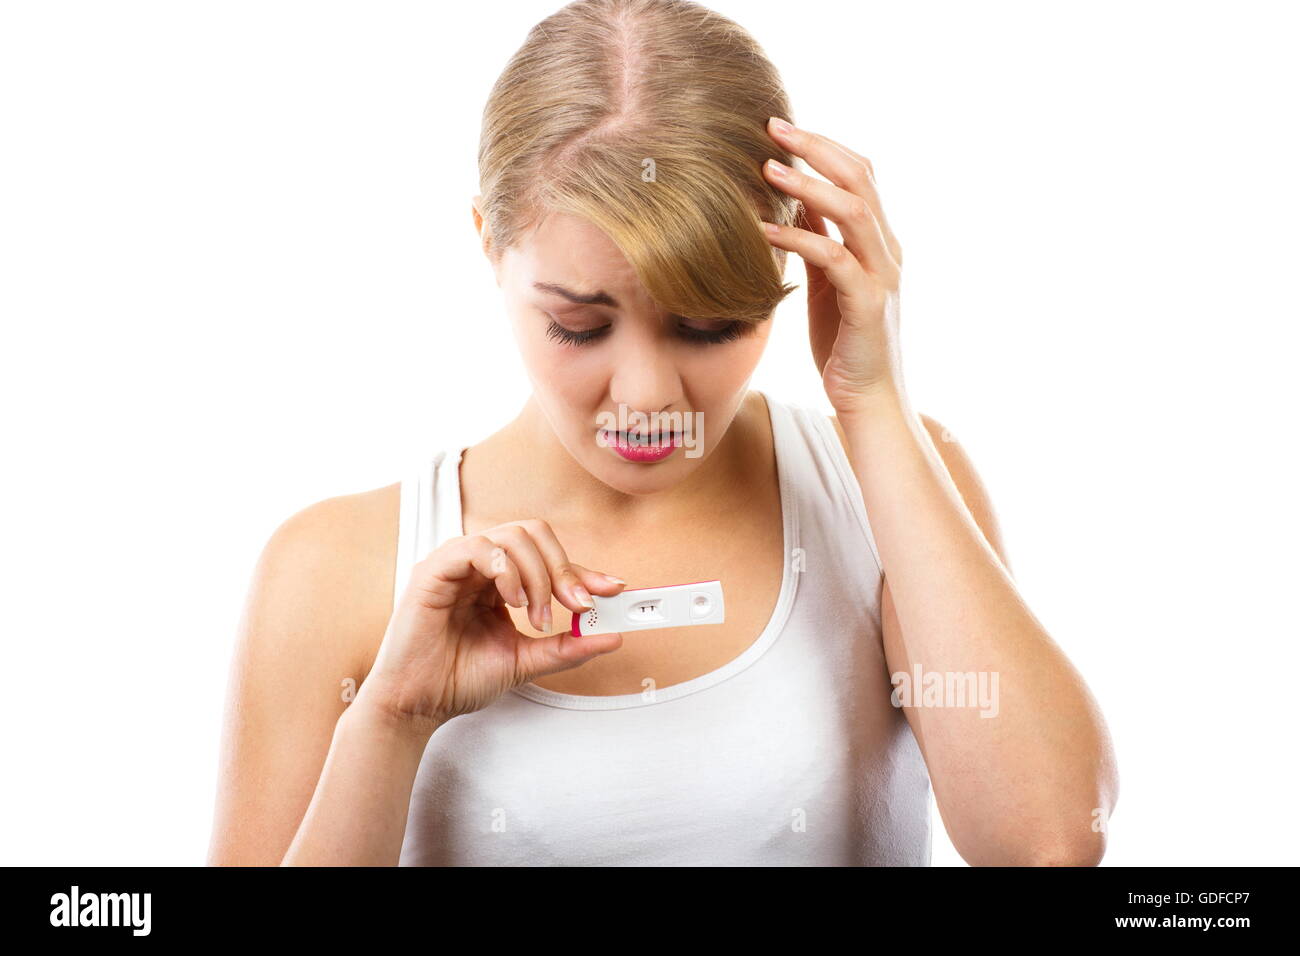 Traurige unglückliche besorgt zeigt Schwangerschaftstest mit positiven Ergebnis, Schwangerschaftstest, ungewollte Schwangerschaft überprüfen Stockfoto